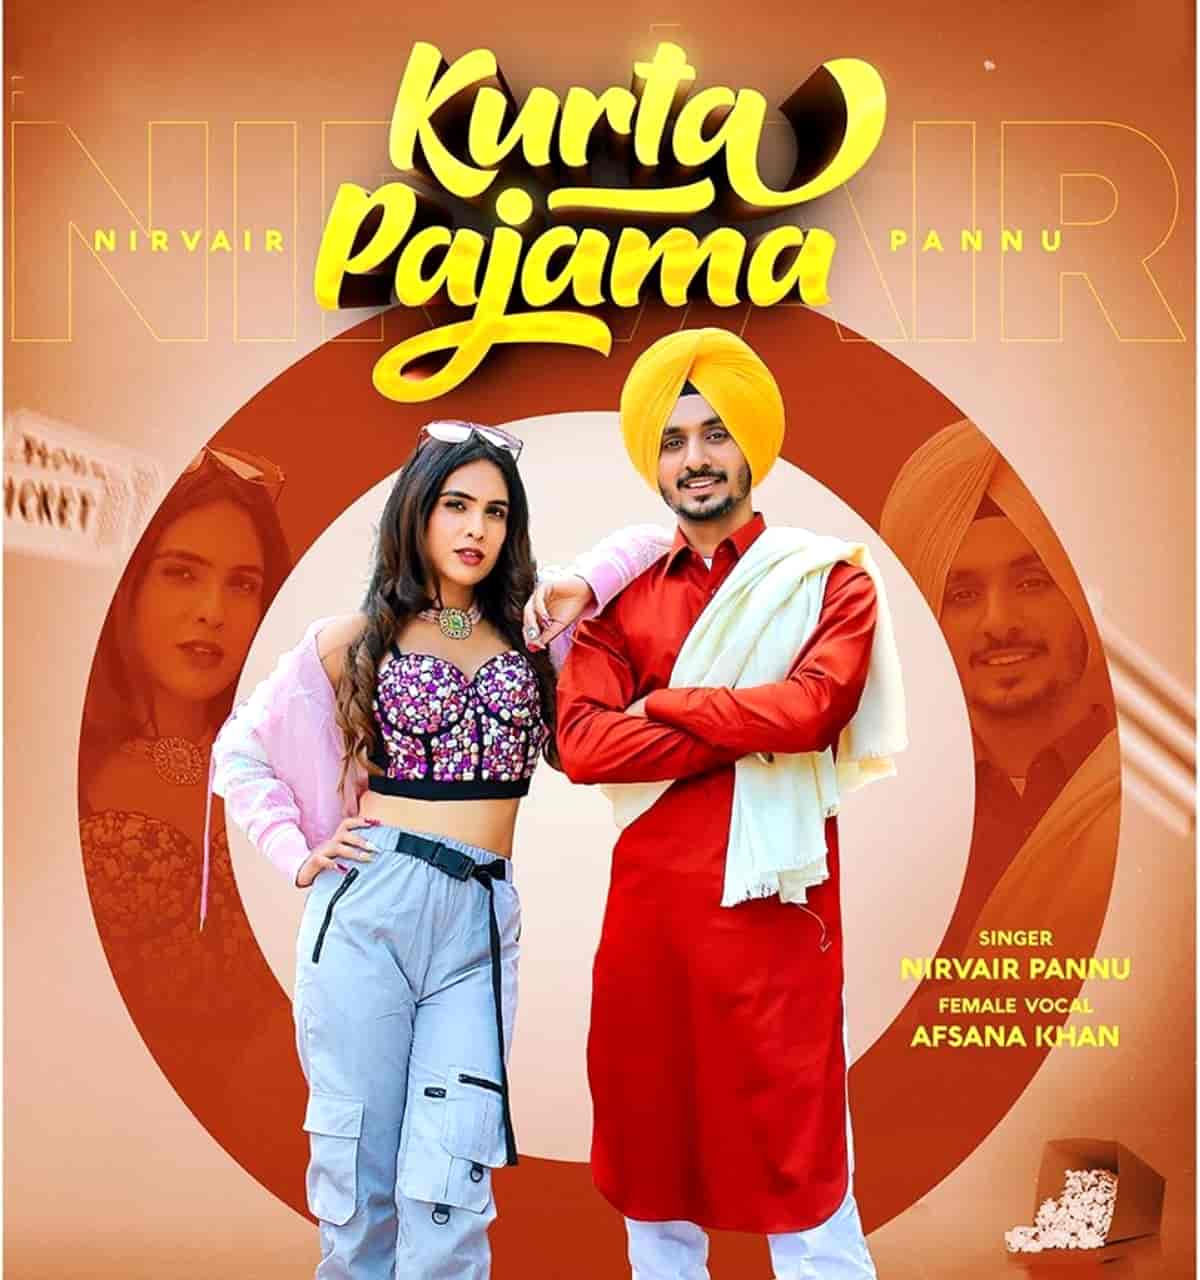 Kurta Pajama Punjabi Song Image By Nirvair Pannu and Afsana Khan